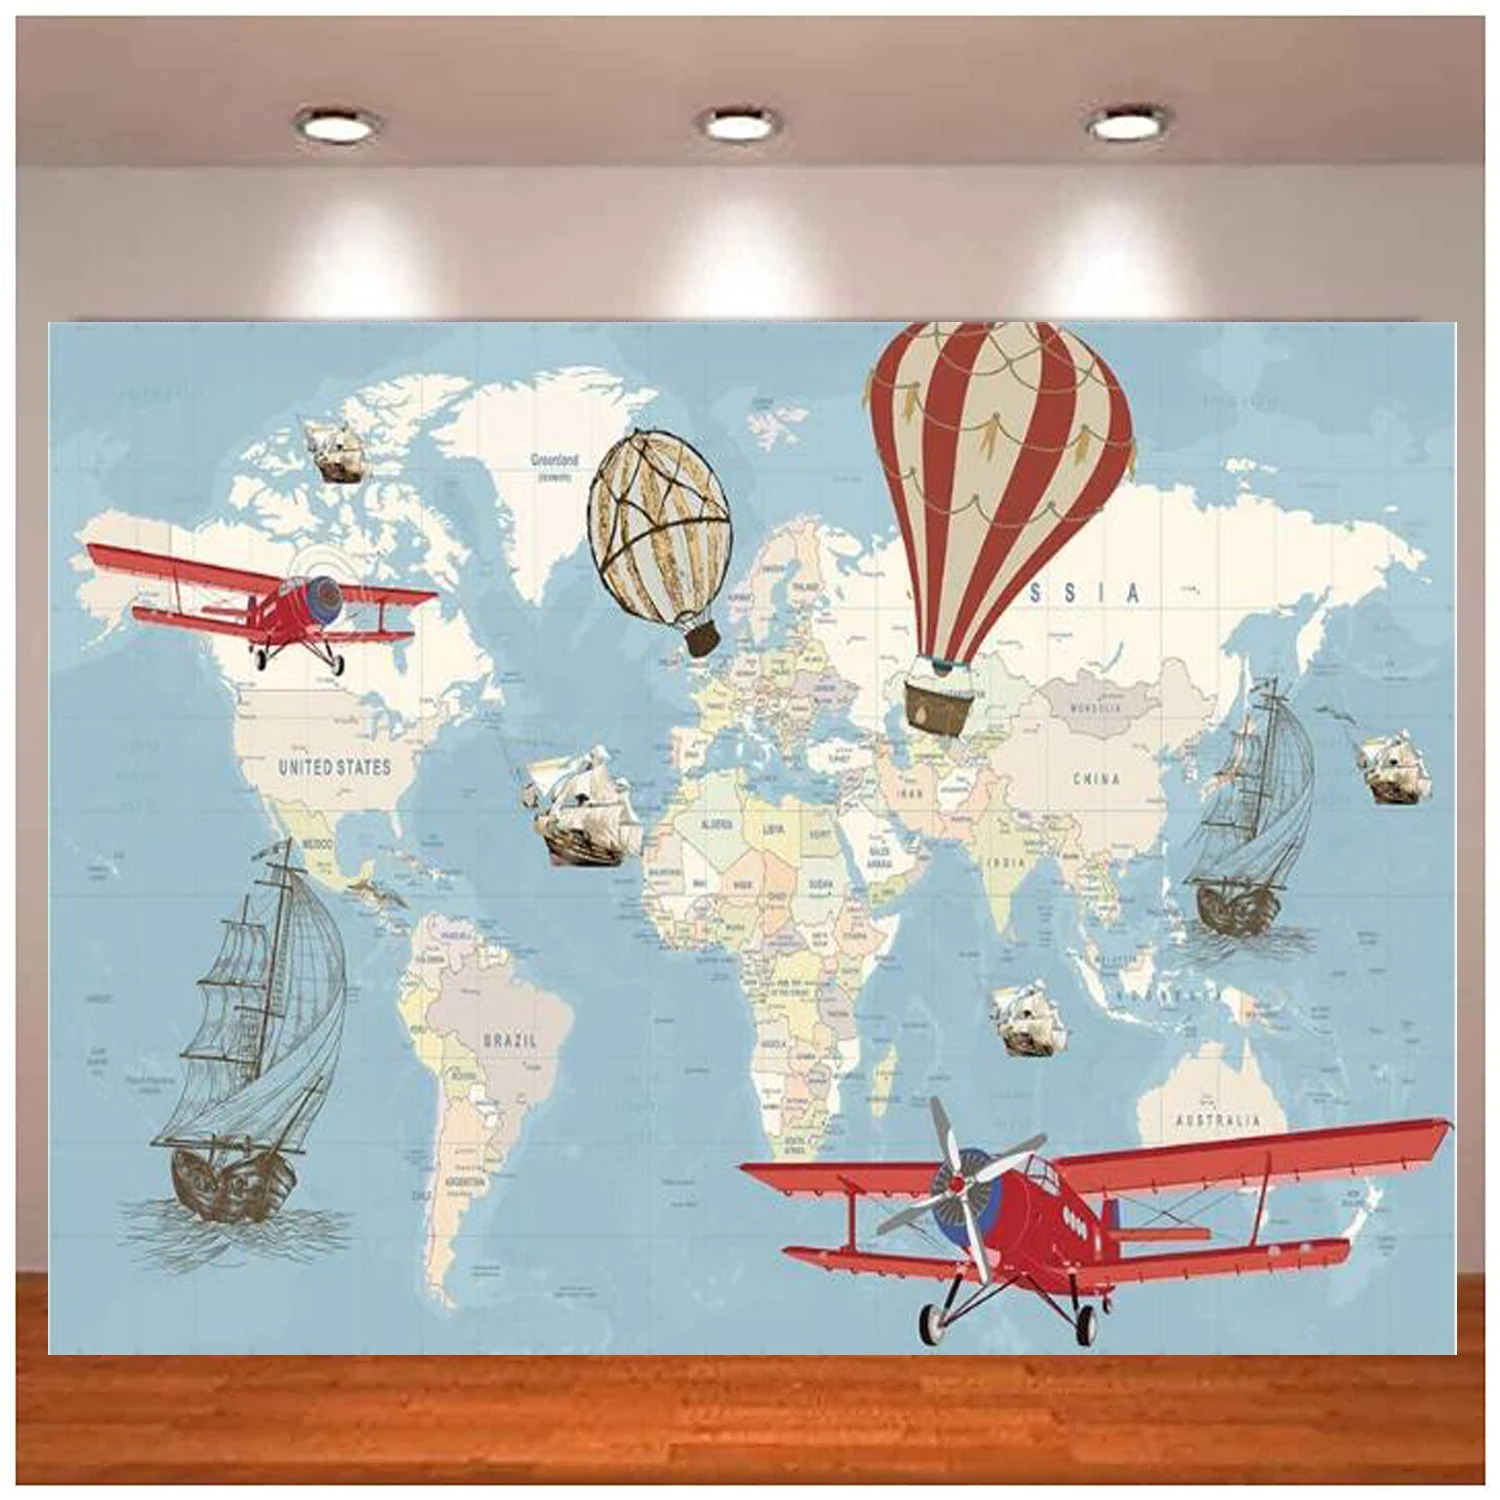 Heißer Luft Ballon Flugzeug Segeln Schiff Geburtstag Hintergrund Welt Karte Abenteuer Erwartet Globe Reise Baby Erwachsene Porträt Hintergrund